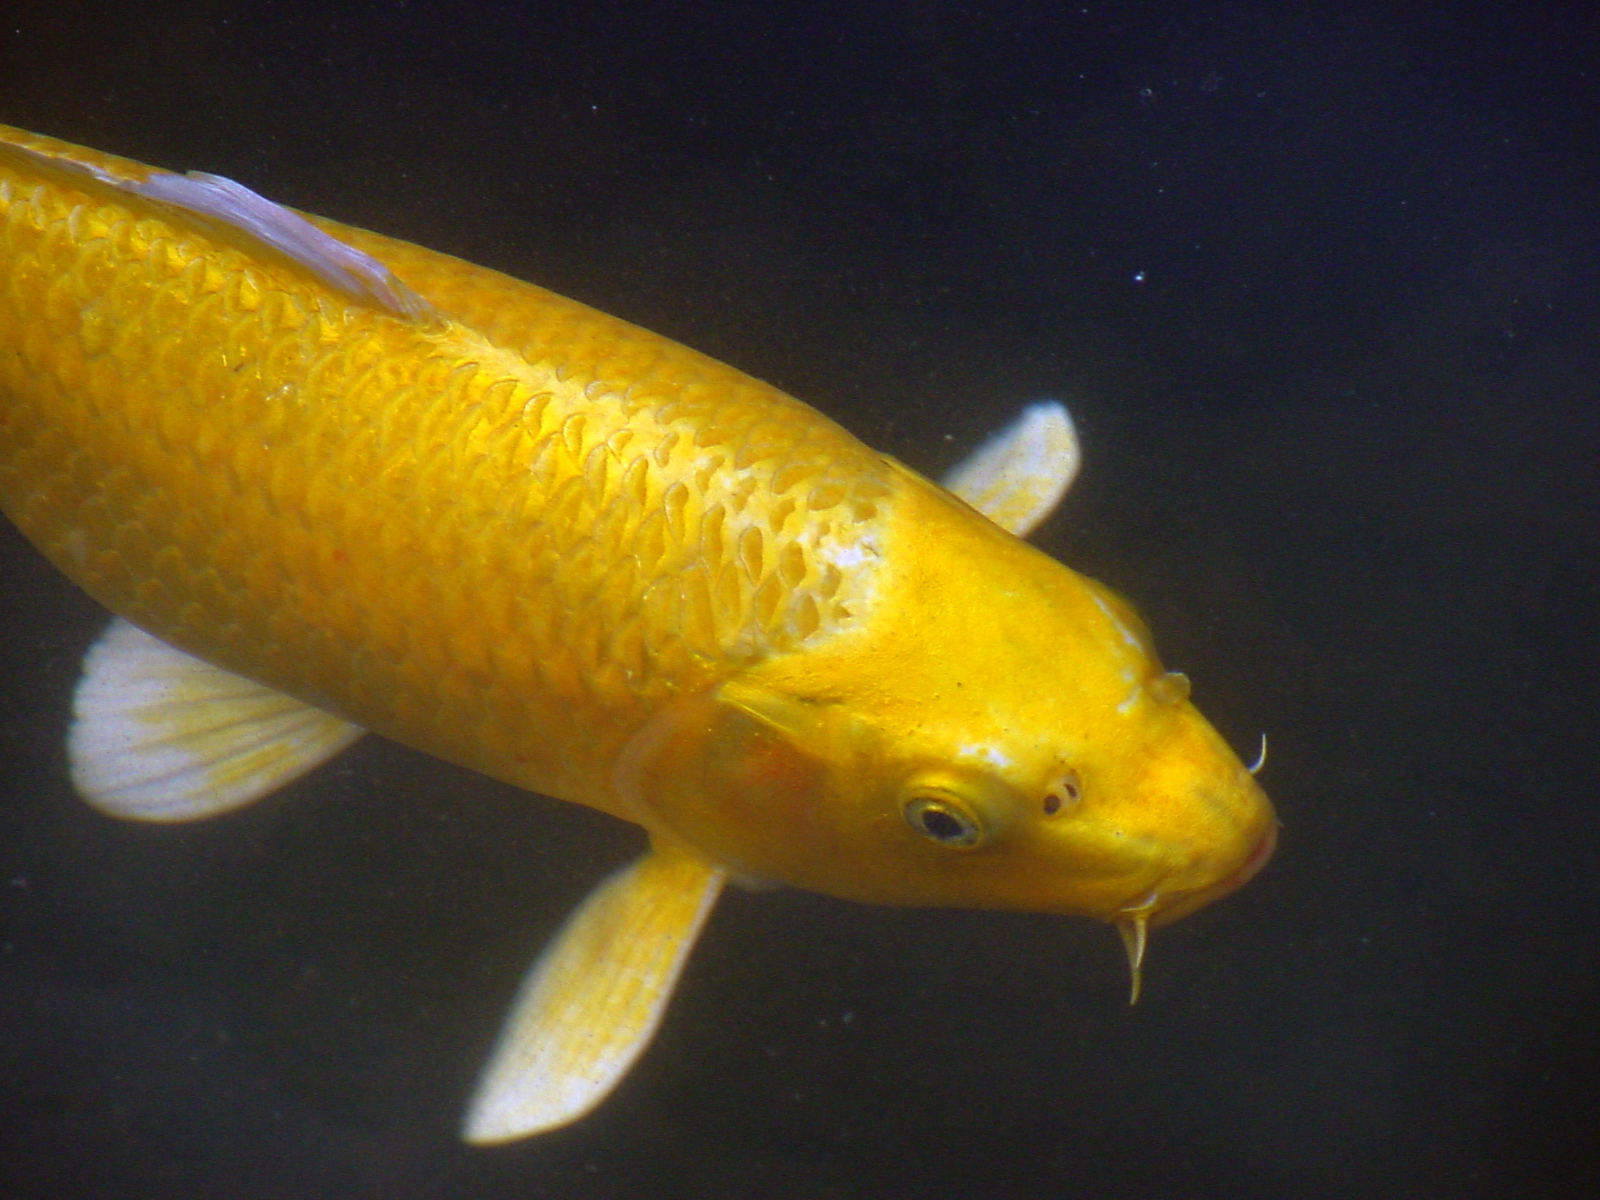 The Golden Fish - A Conversion Story - CatholicMom.com - Celebrating ...